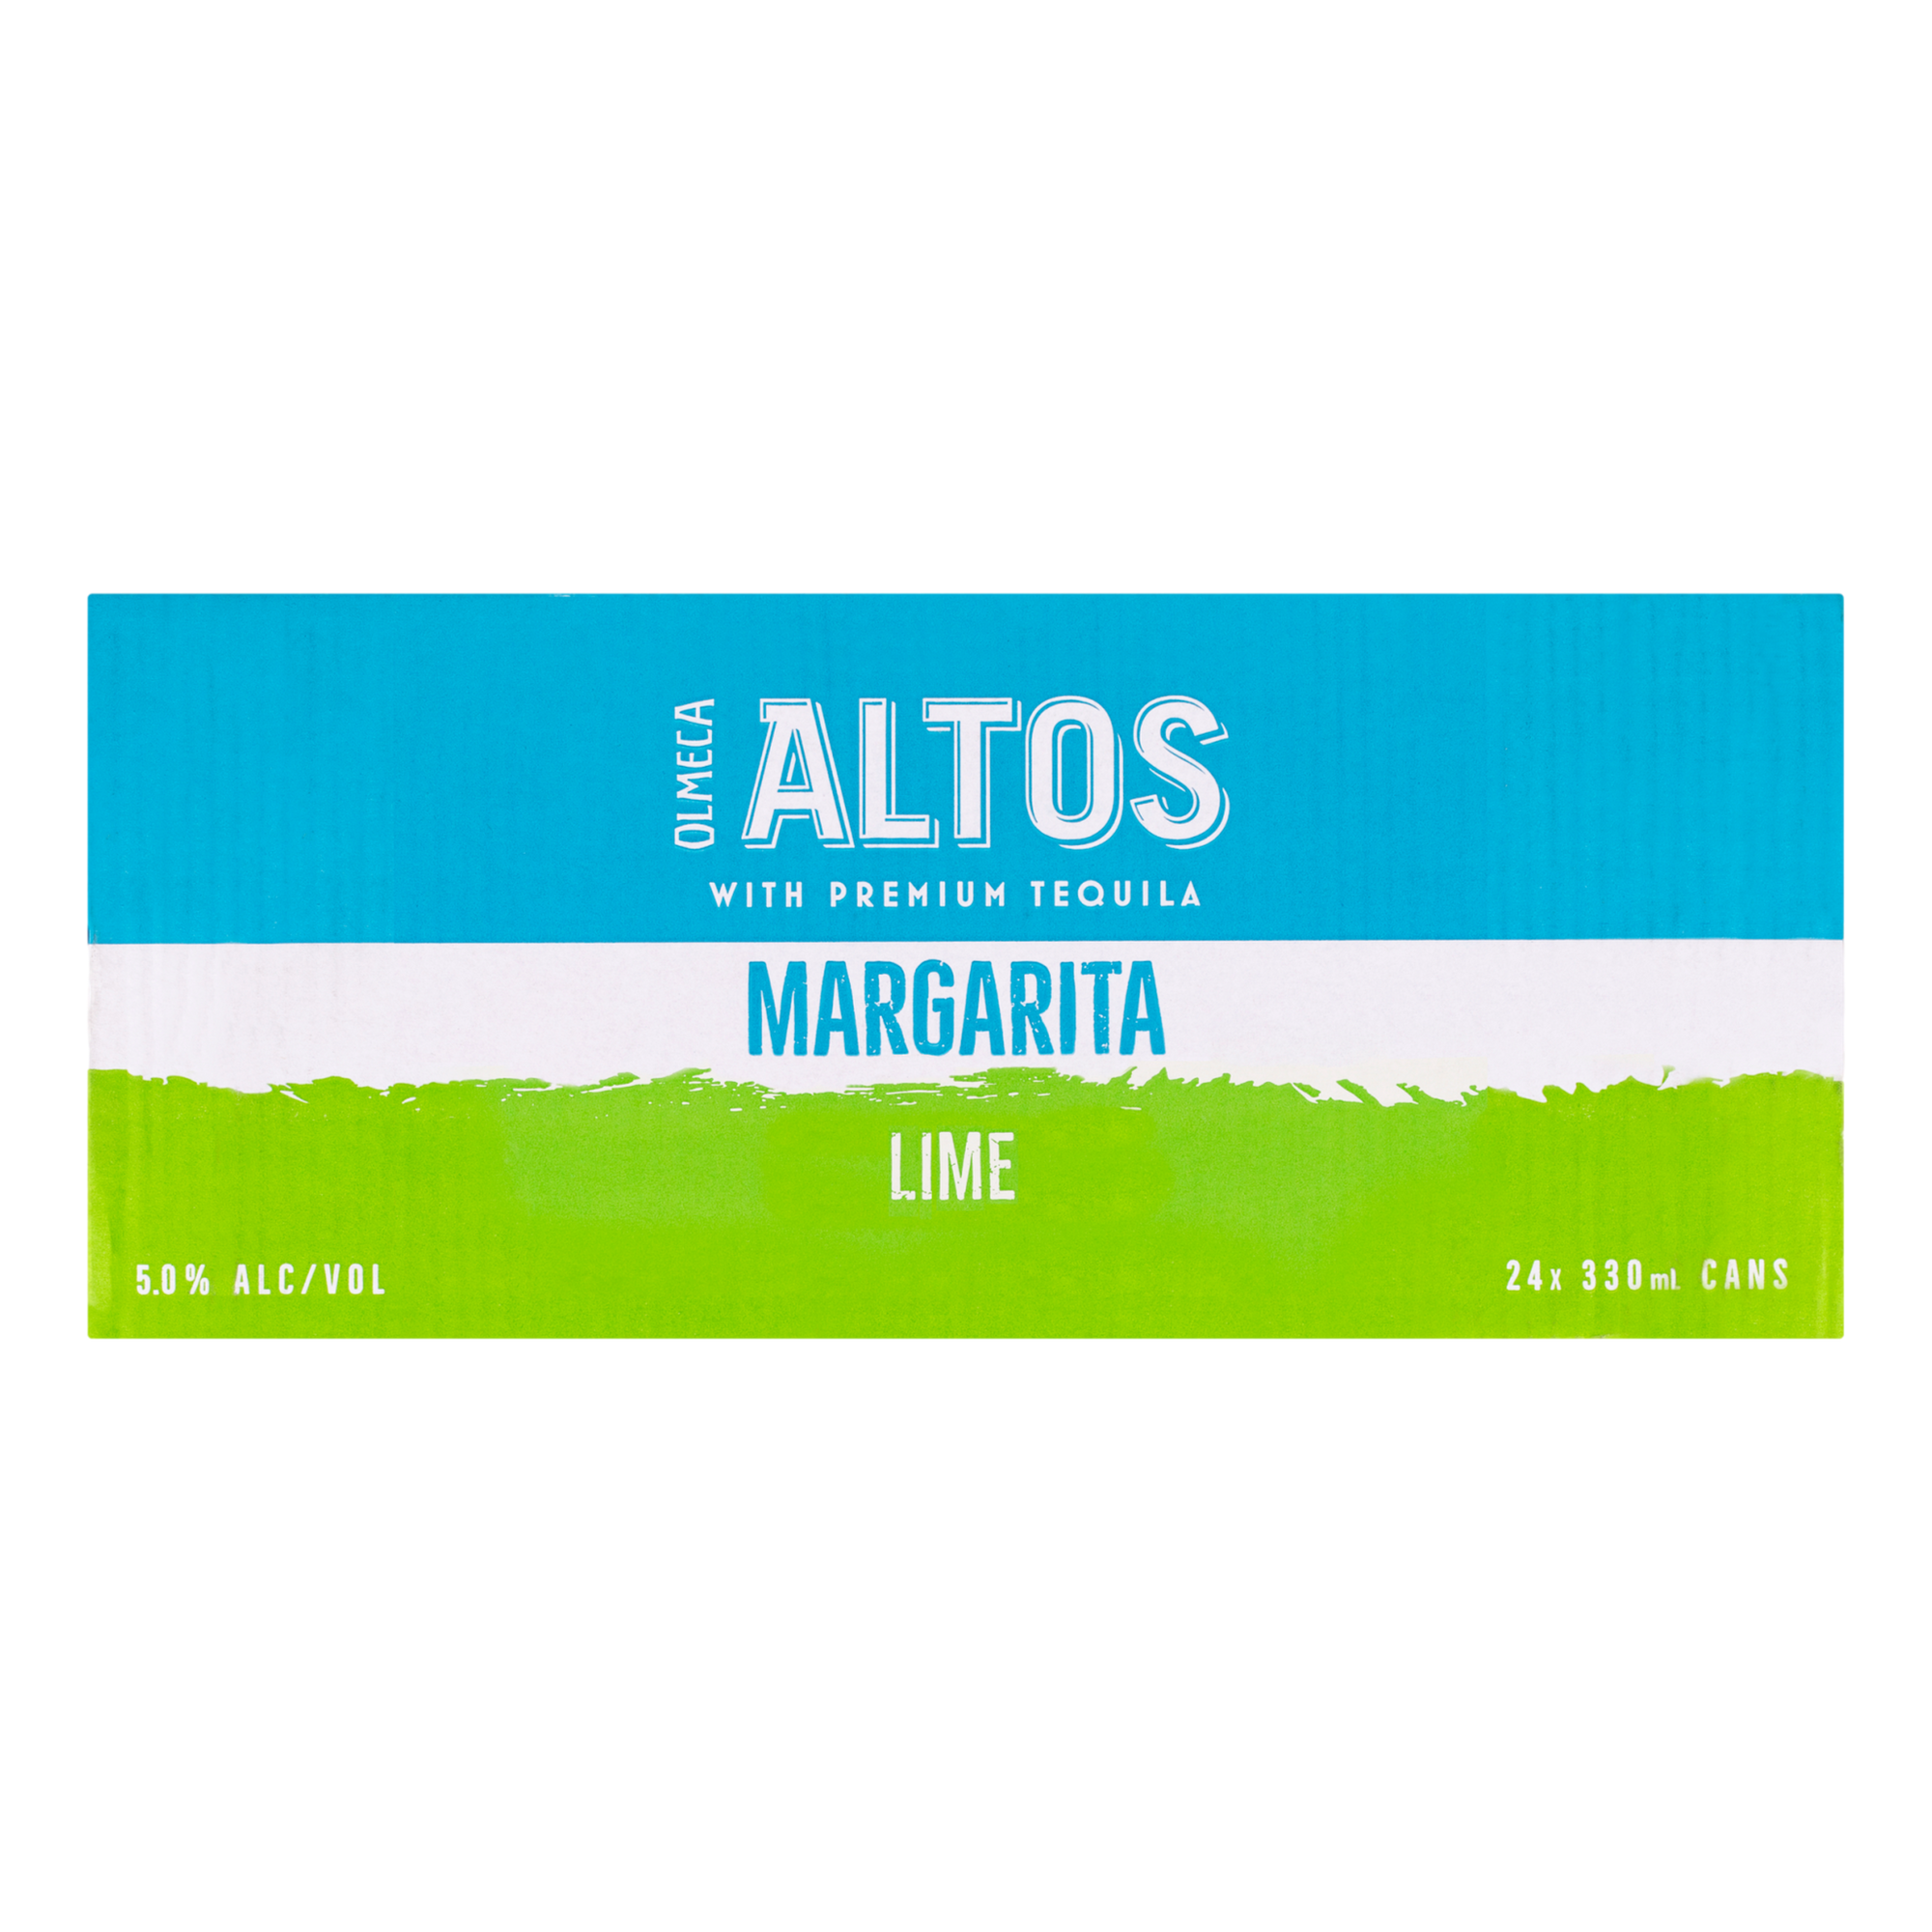 Olmeca Altos Lime Margarita 330ml Can Case of 24